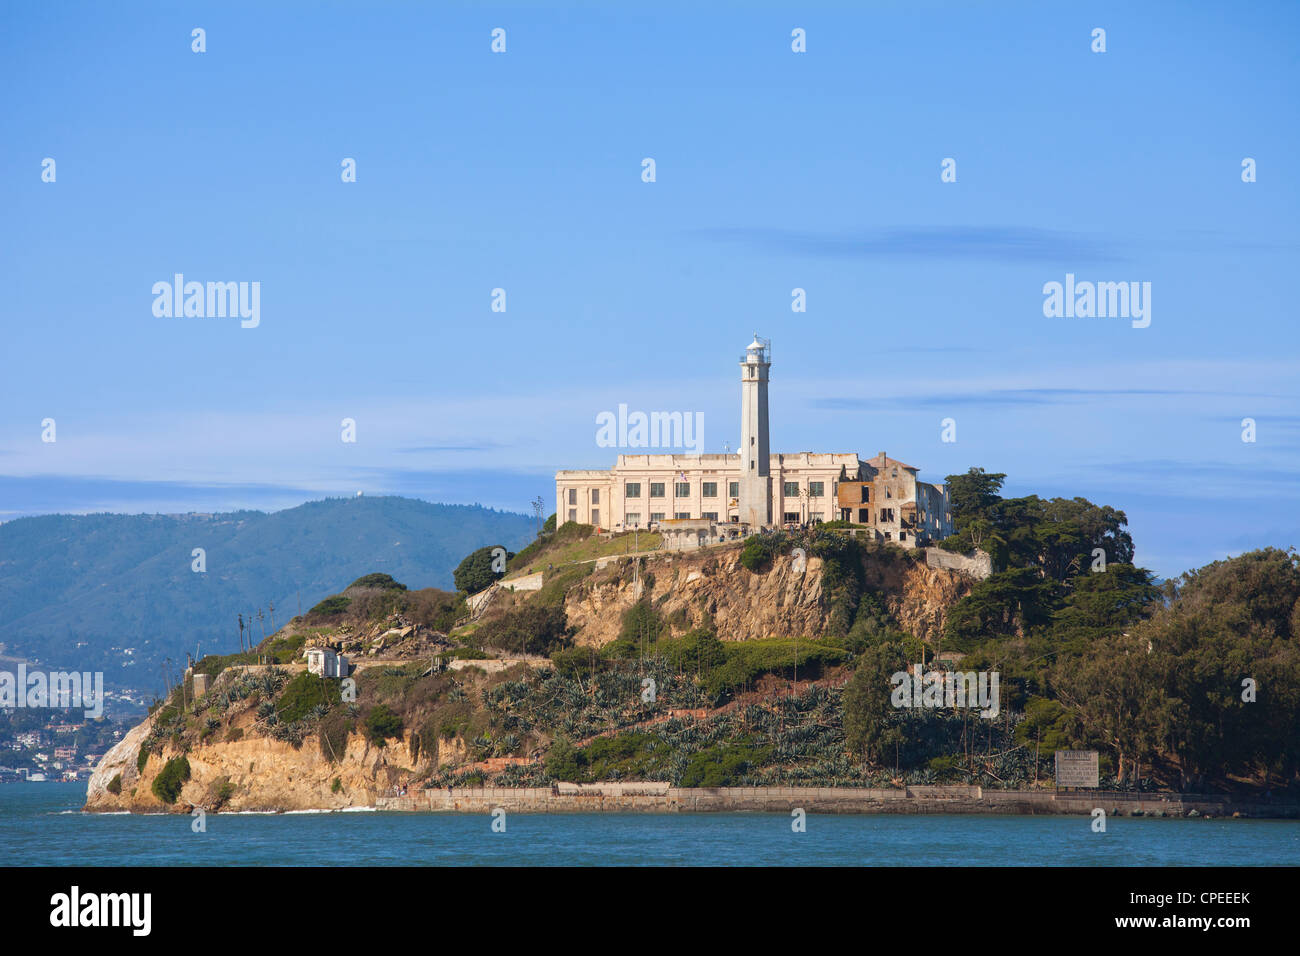 The Rock, Alcatraz Island. San Francisco Bay, California. Stock Photo